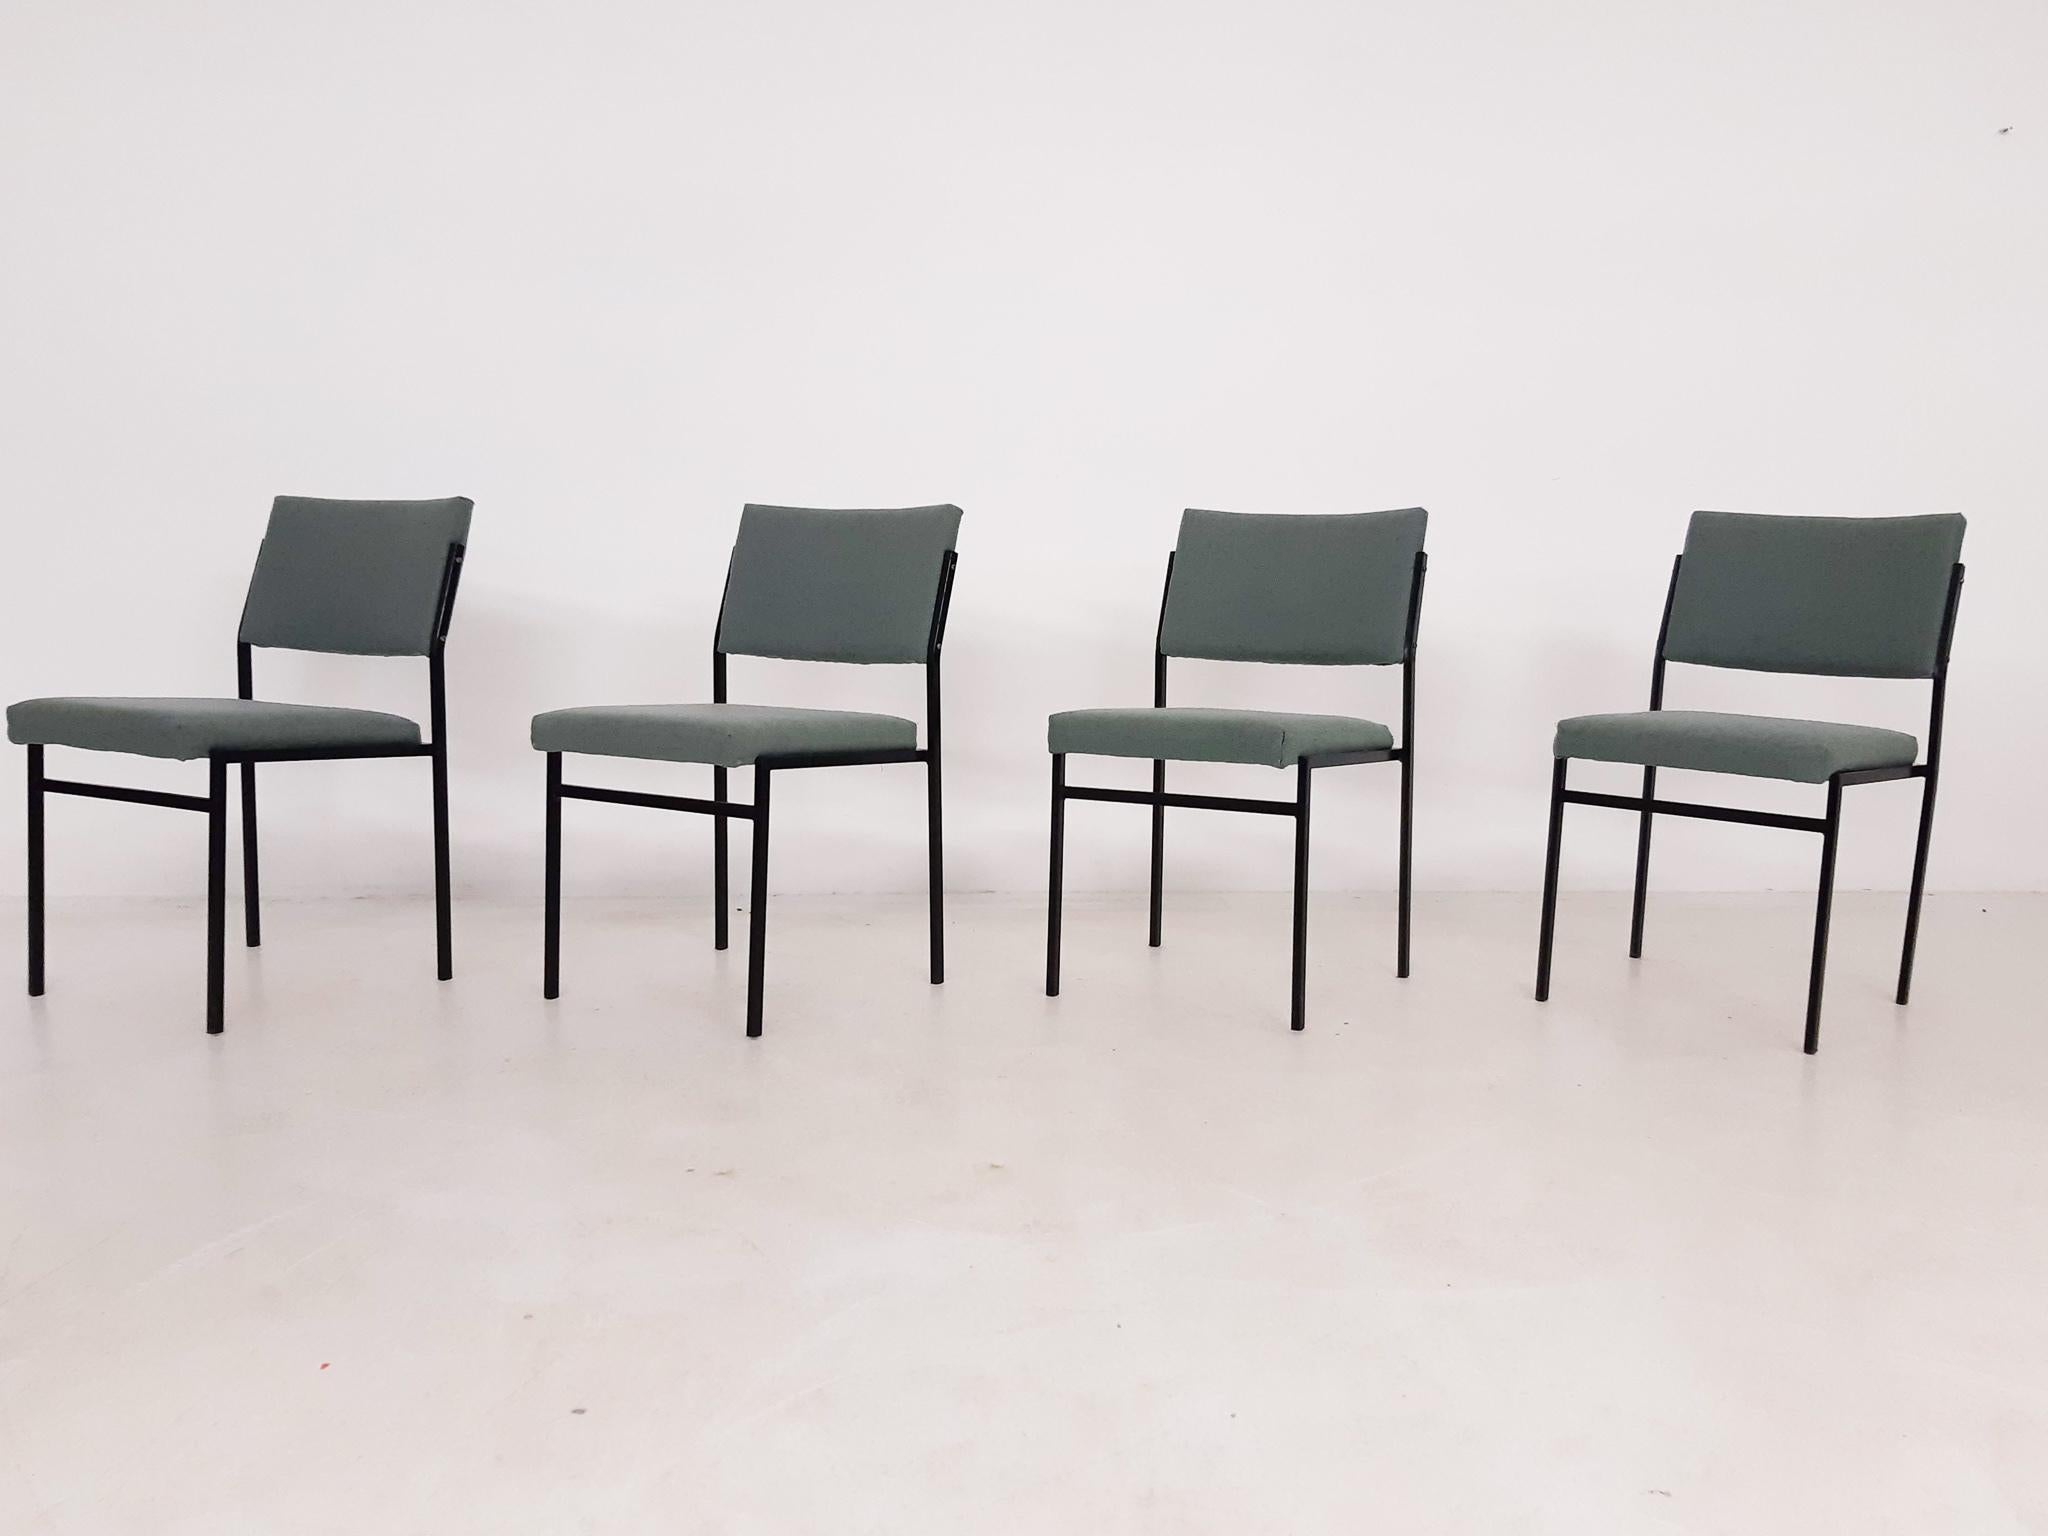 50 chaises empilables vintage en métal avec structure en métal noir et tapisserie verte, certaines chaises ont quelques taches. Fabriqué aux Pays-Bas dans les années 1960
Prix par pièce.
Gijs Van Der Sluis était un designer de meubles néerlandais